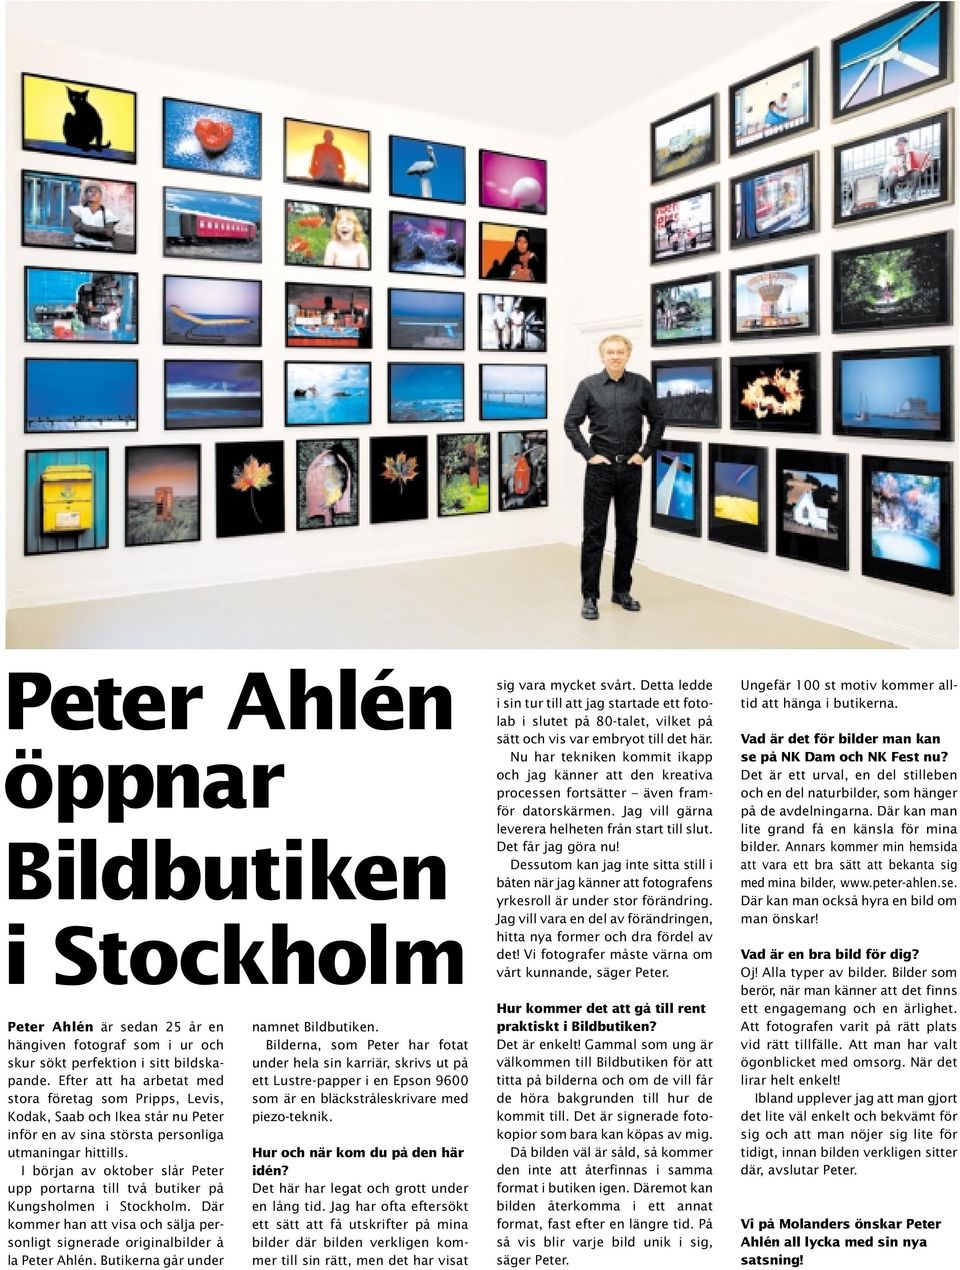 I början av oktober slår Peter upp portarna till två butiker på Kungsholmen i Stockholm. Där kommer han att visa och sälja personligt signerade originalbilder à la Peter Ahlén.